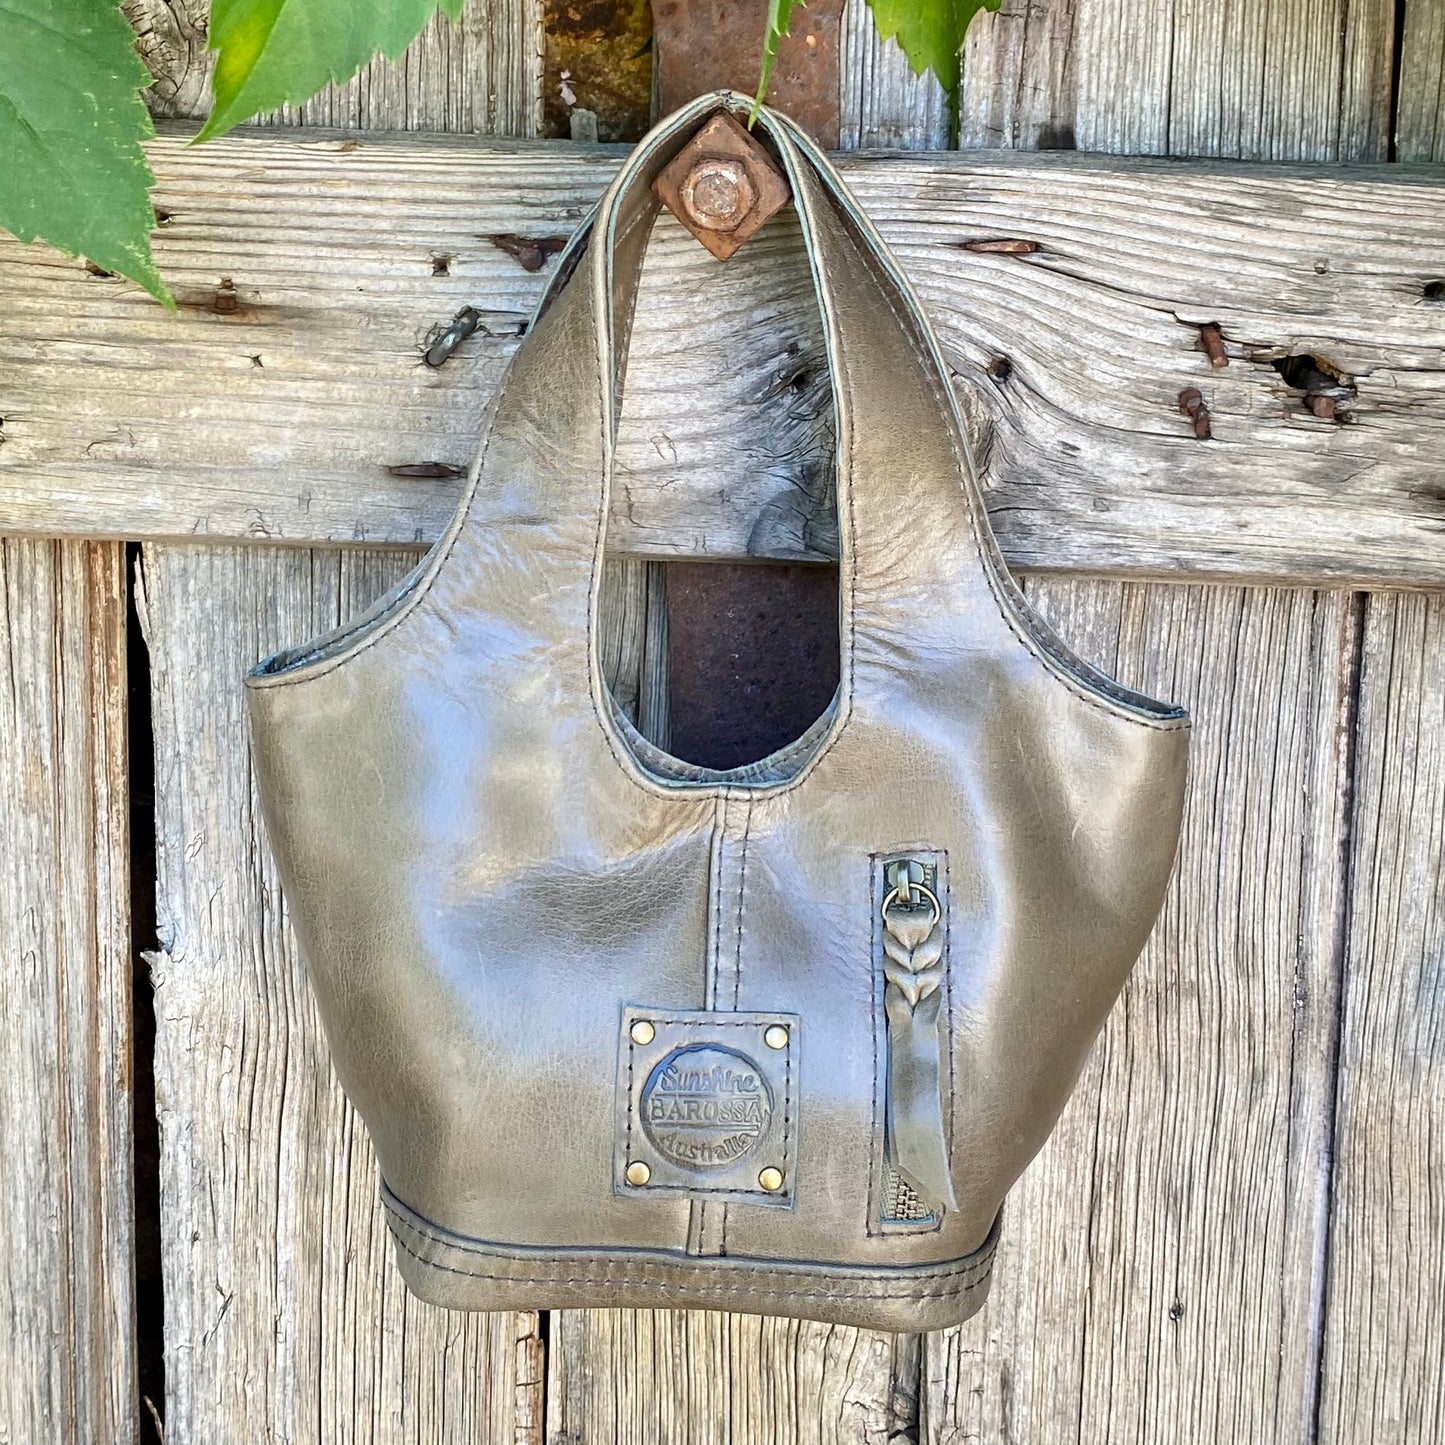 The Little Zipper Bag